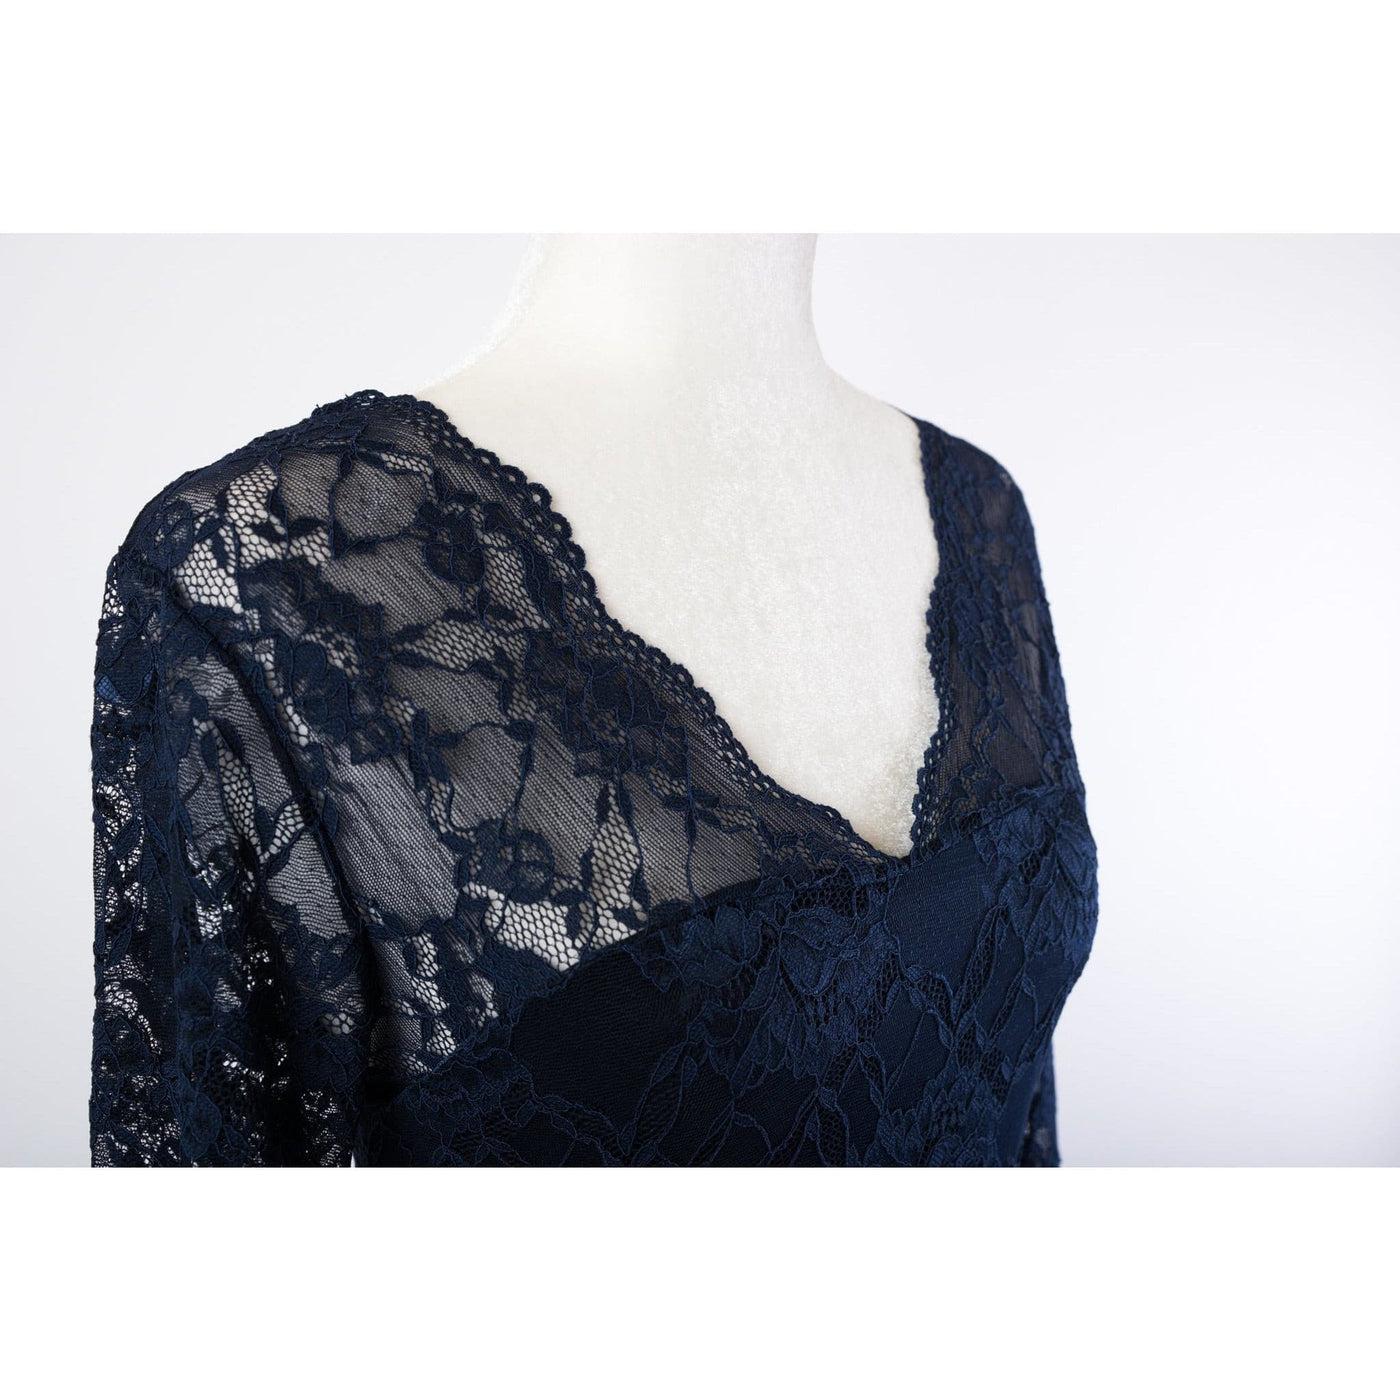 Blue Lace Dress - La Belle Bump